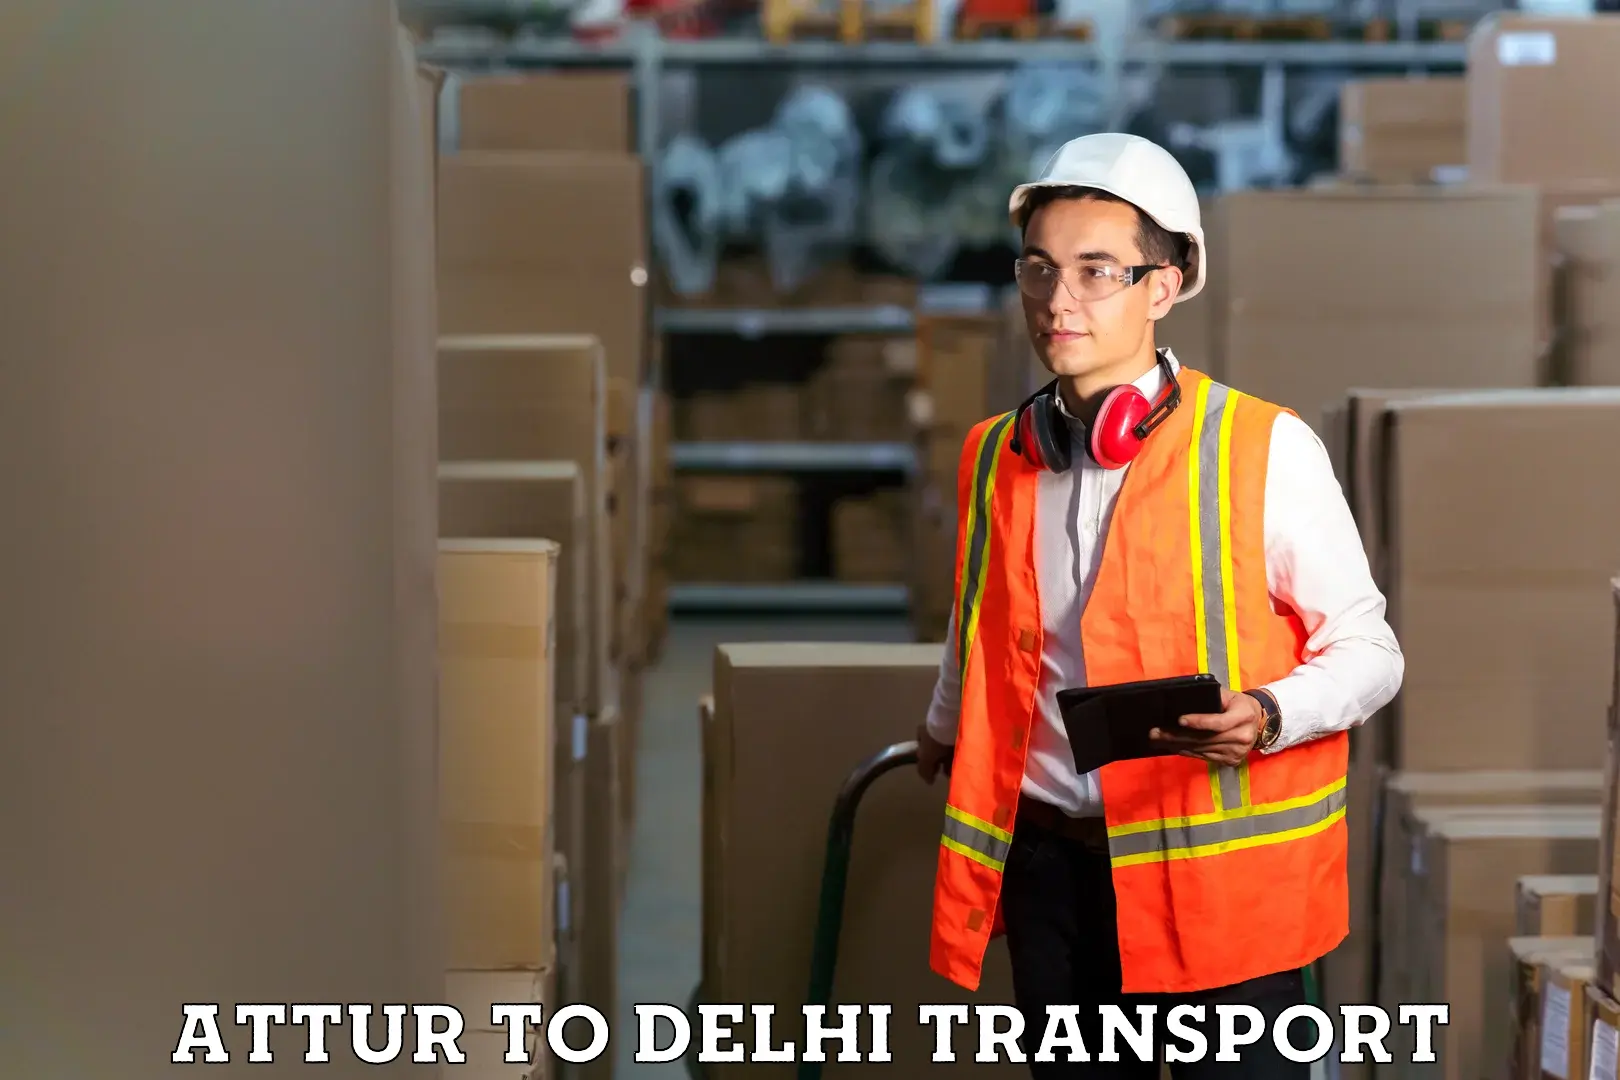 International cargo transportation services Attur to Delhi